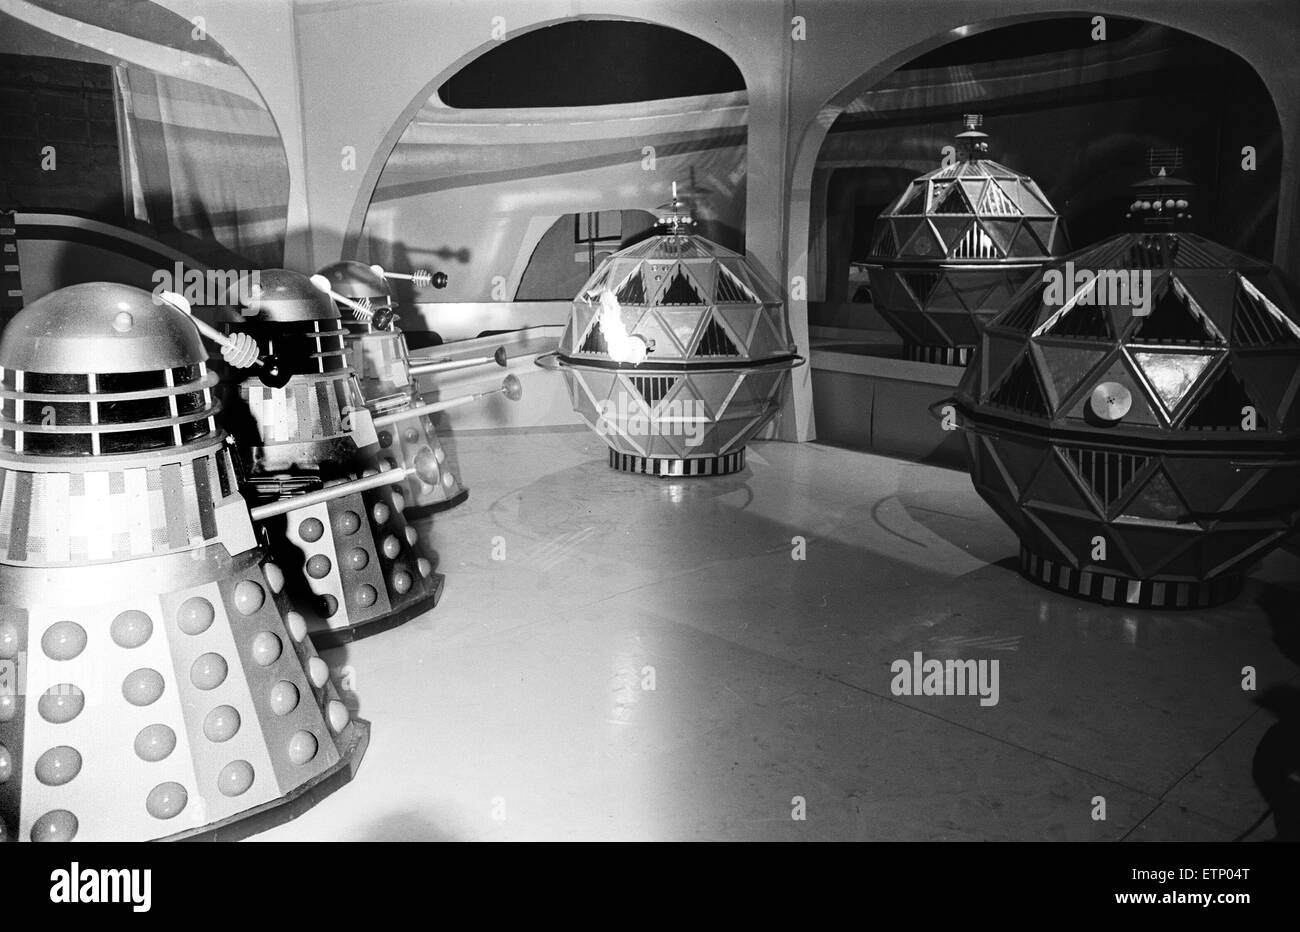 Doctor Who, série télé, scène d'histoire intitulée 'La chasse', saison 8,  saison 2. Les images montrent l'affrontement entre les Mechonoids, grands  robots sphériques à l'origine construit par l'homme afin d'aider à coloniser